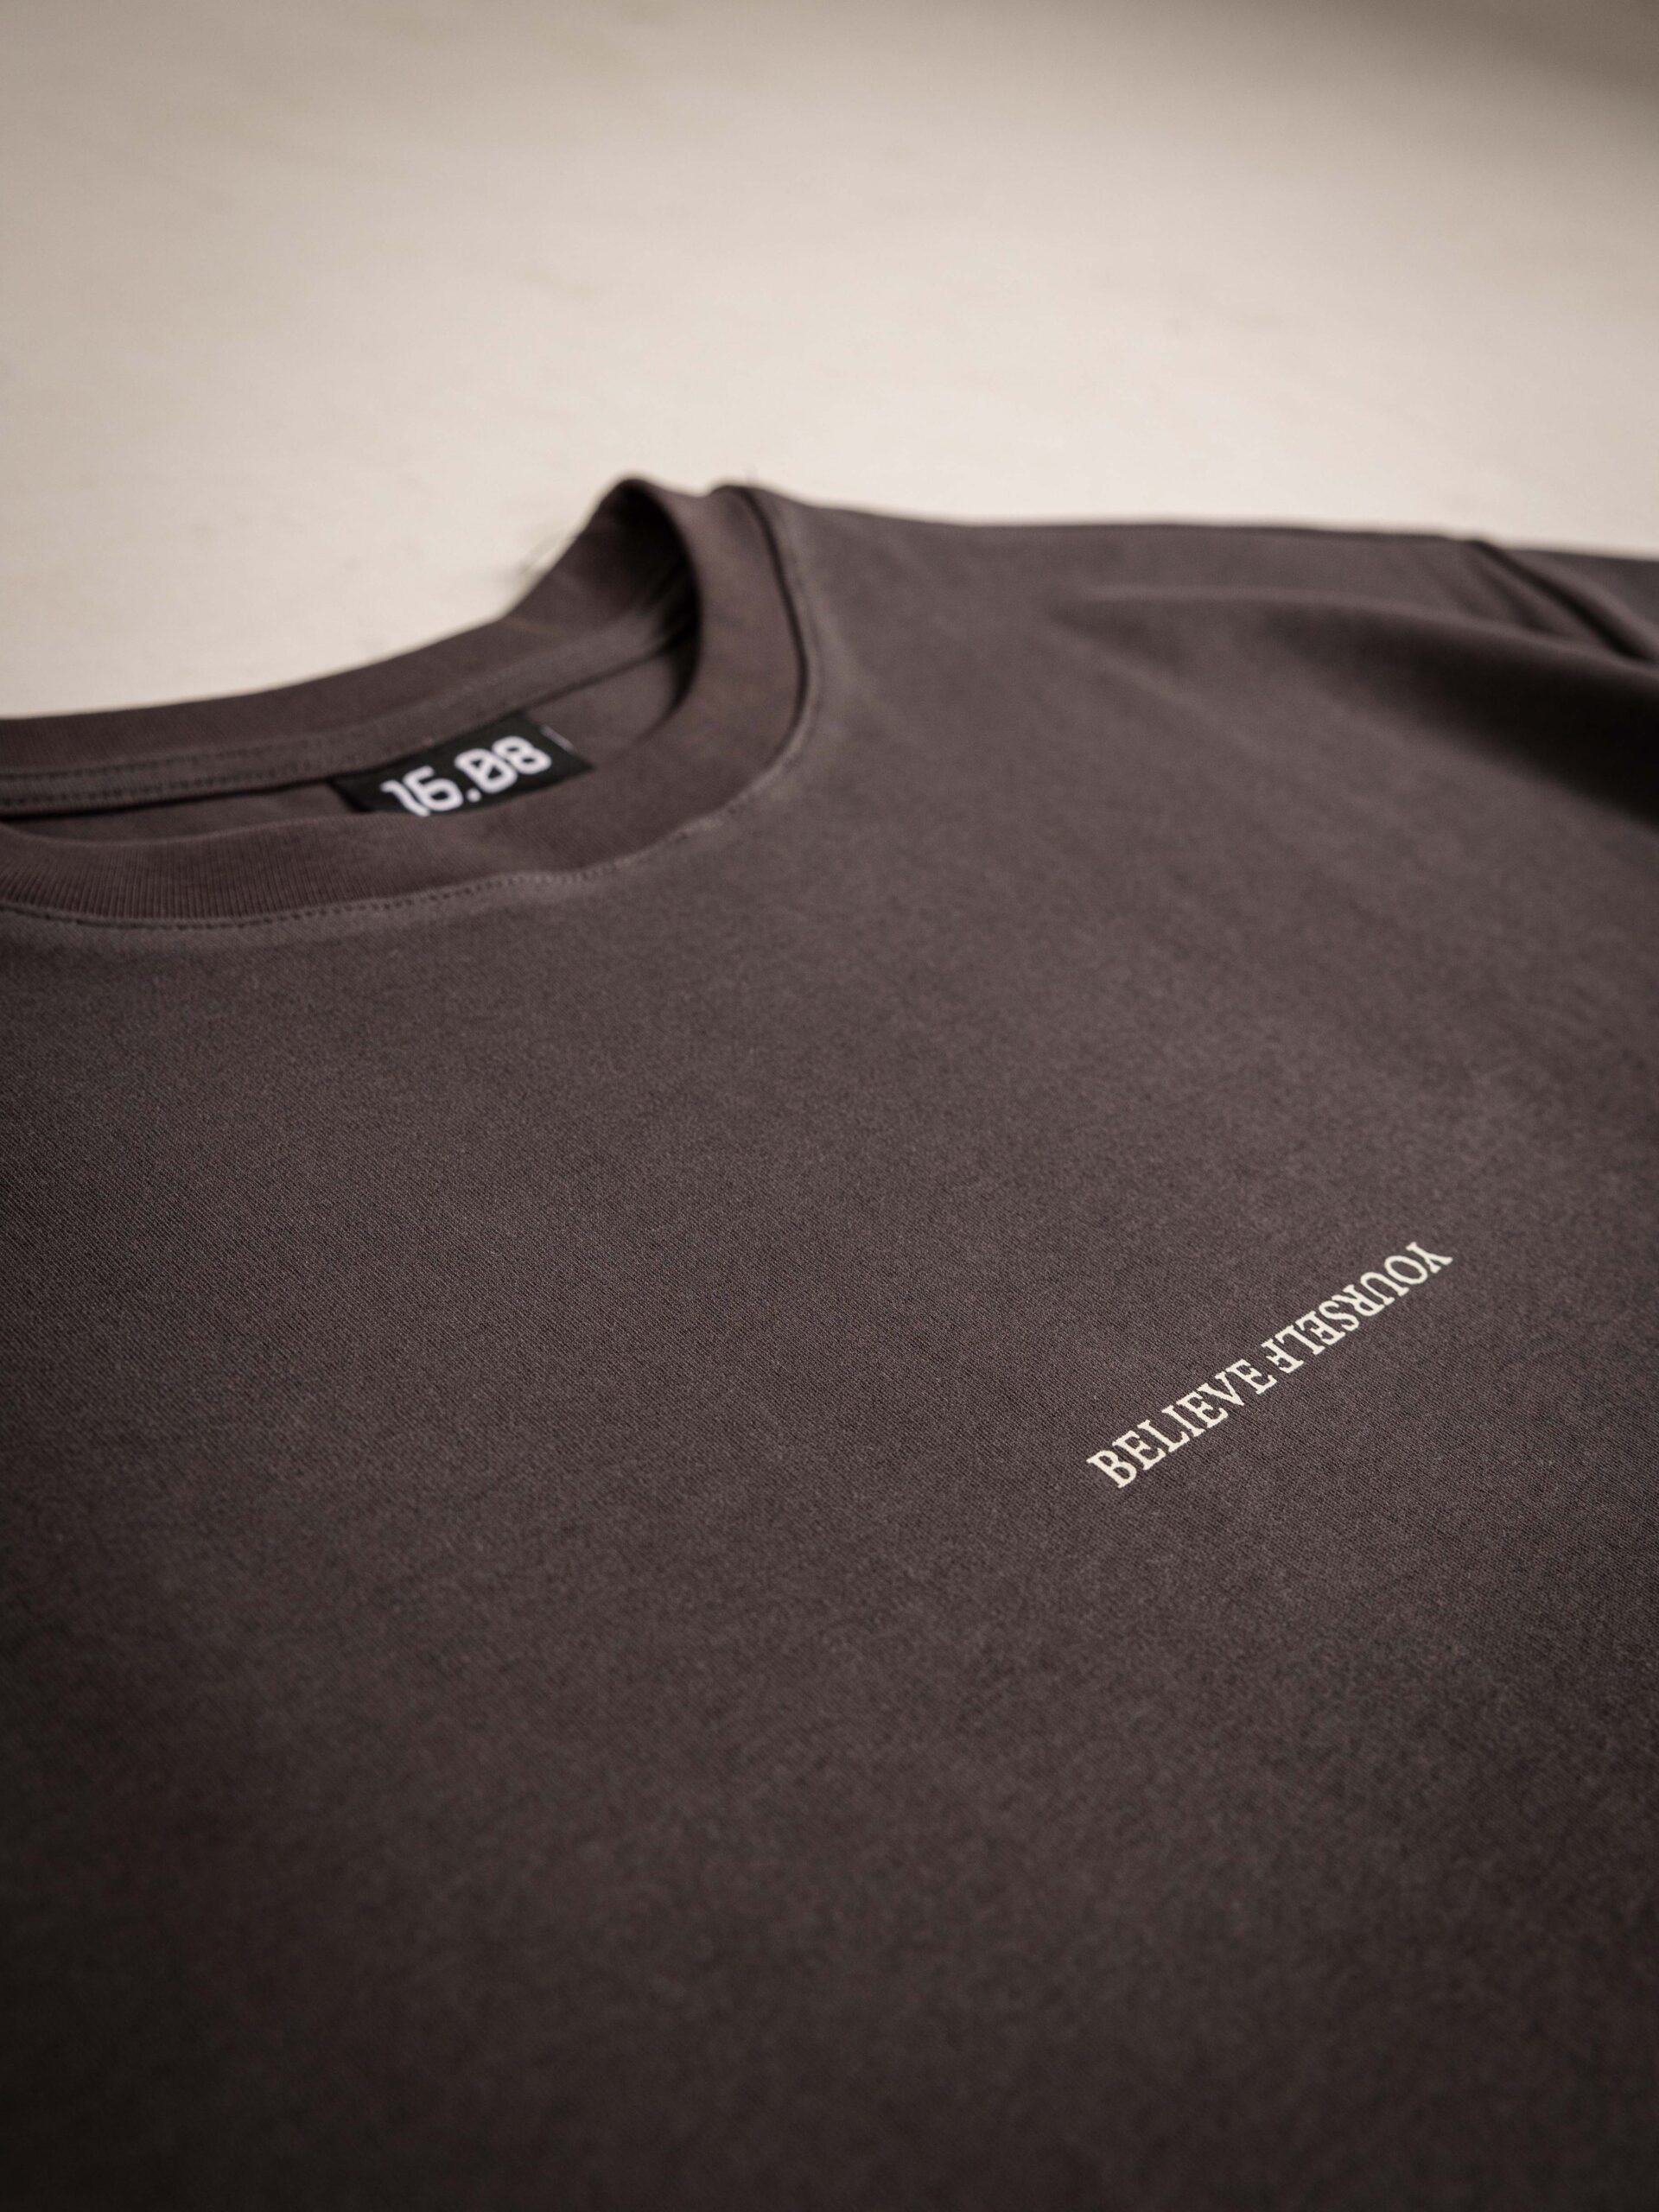 Offblack Believe T-Shirt in Übergröße 1608 WEAR